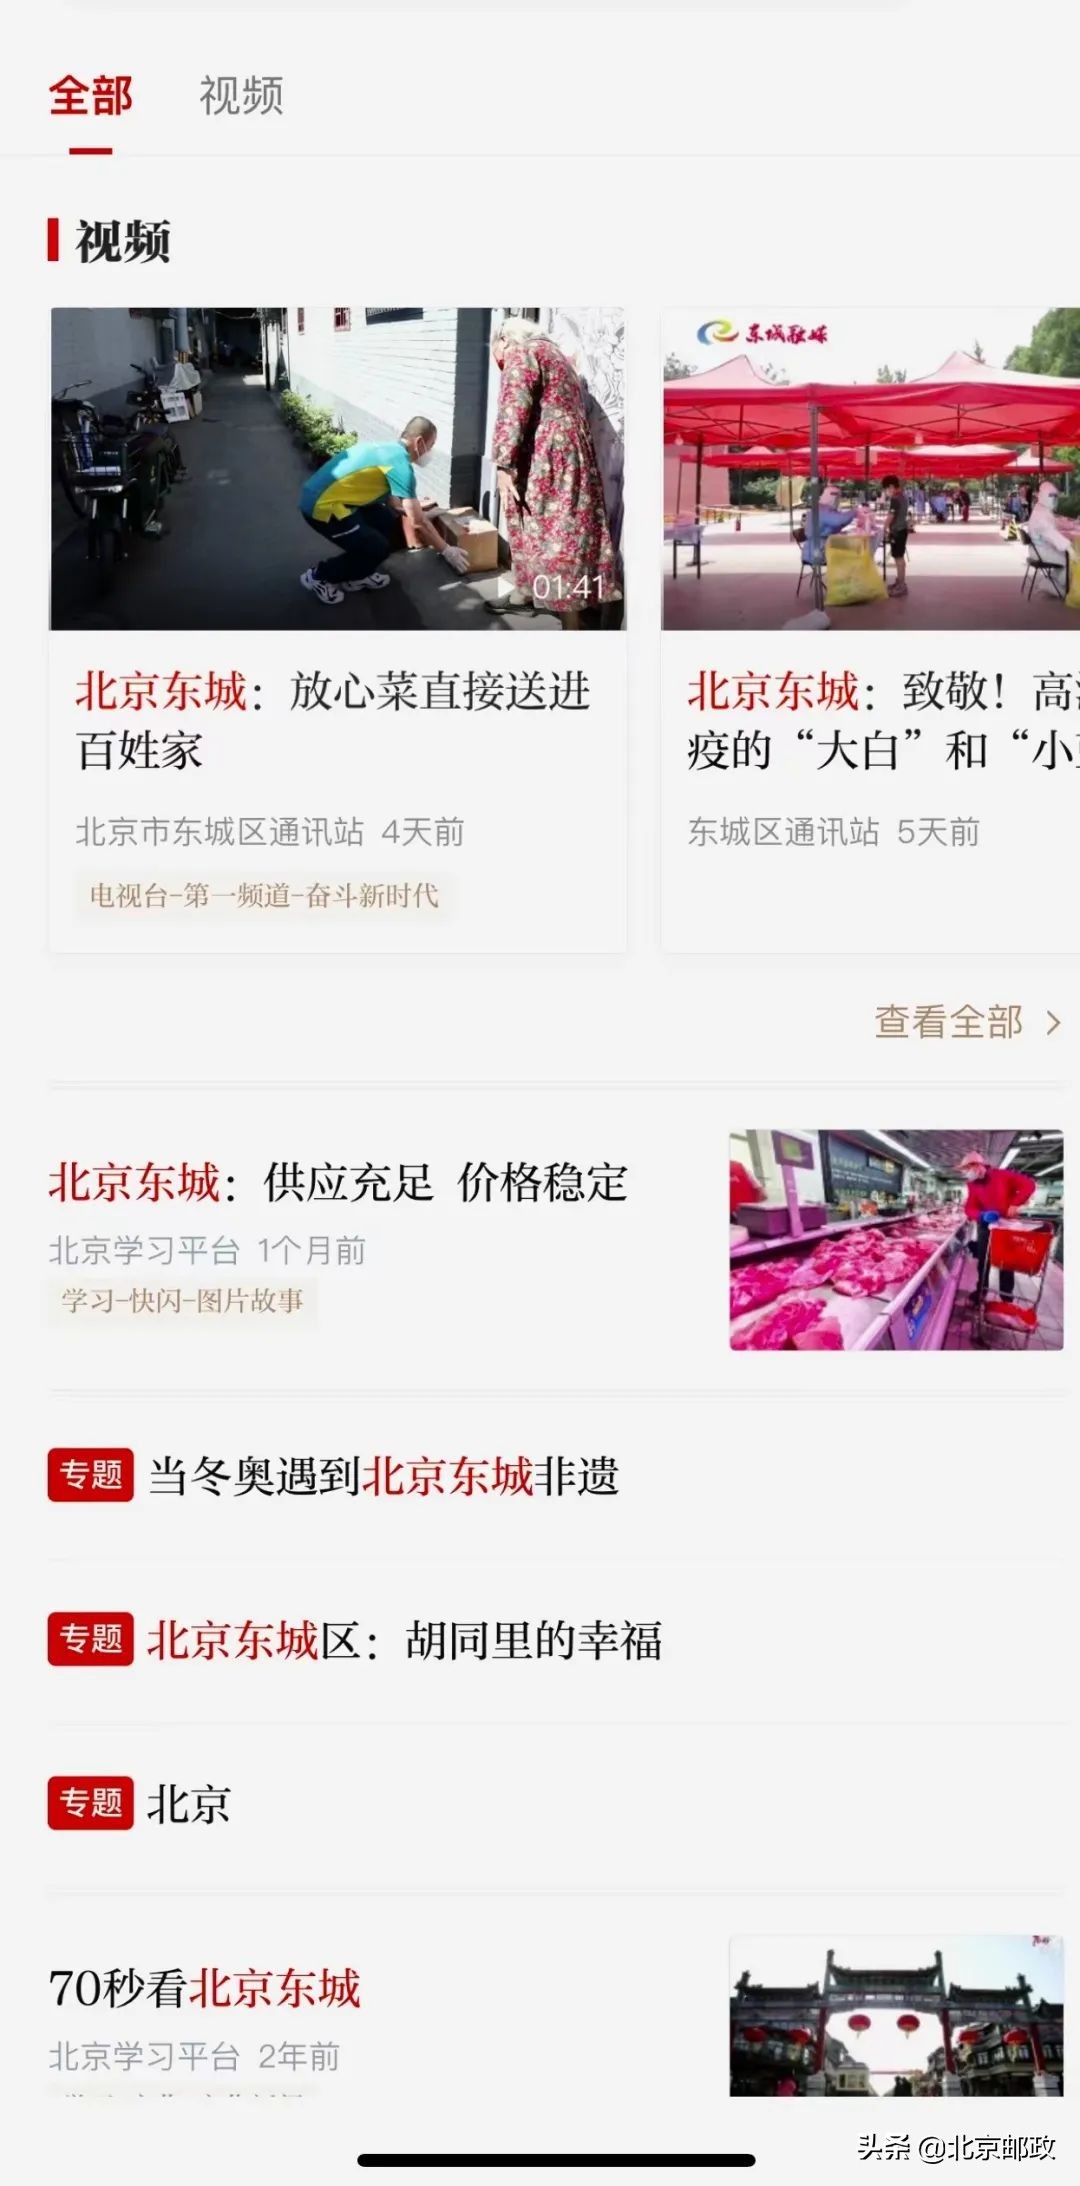 点赞！多家媒体纷纷报道北京邮政新鲜蔬菜直送百姓手中